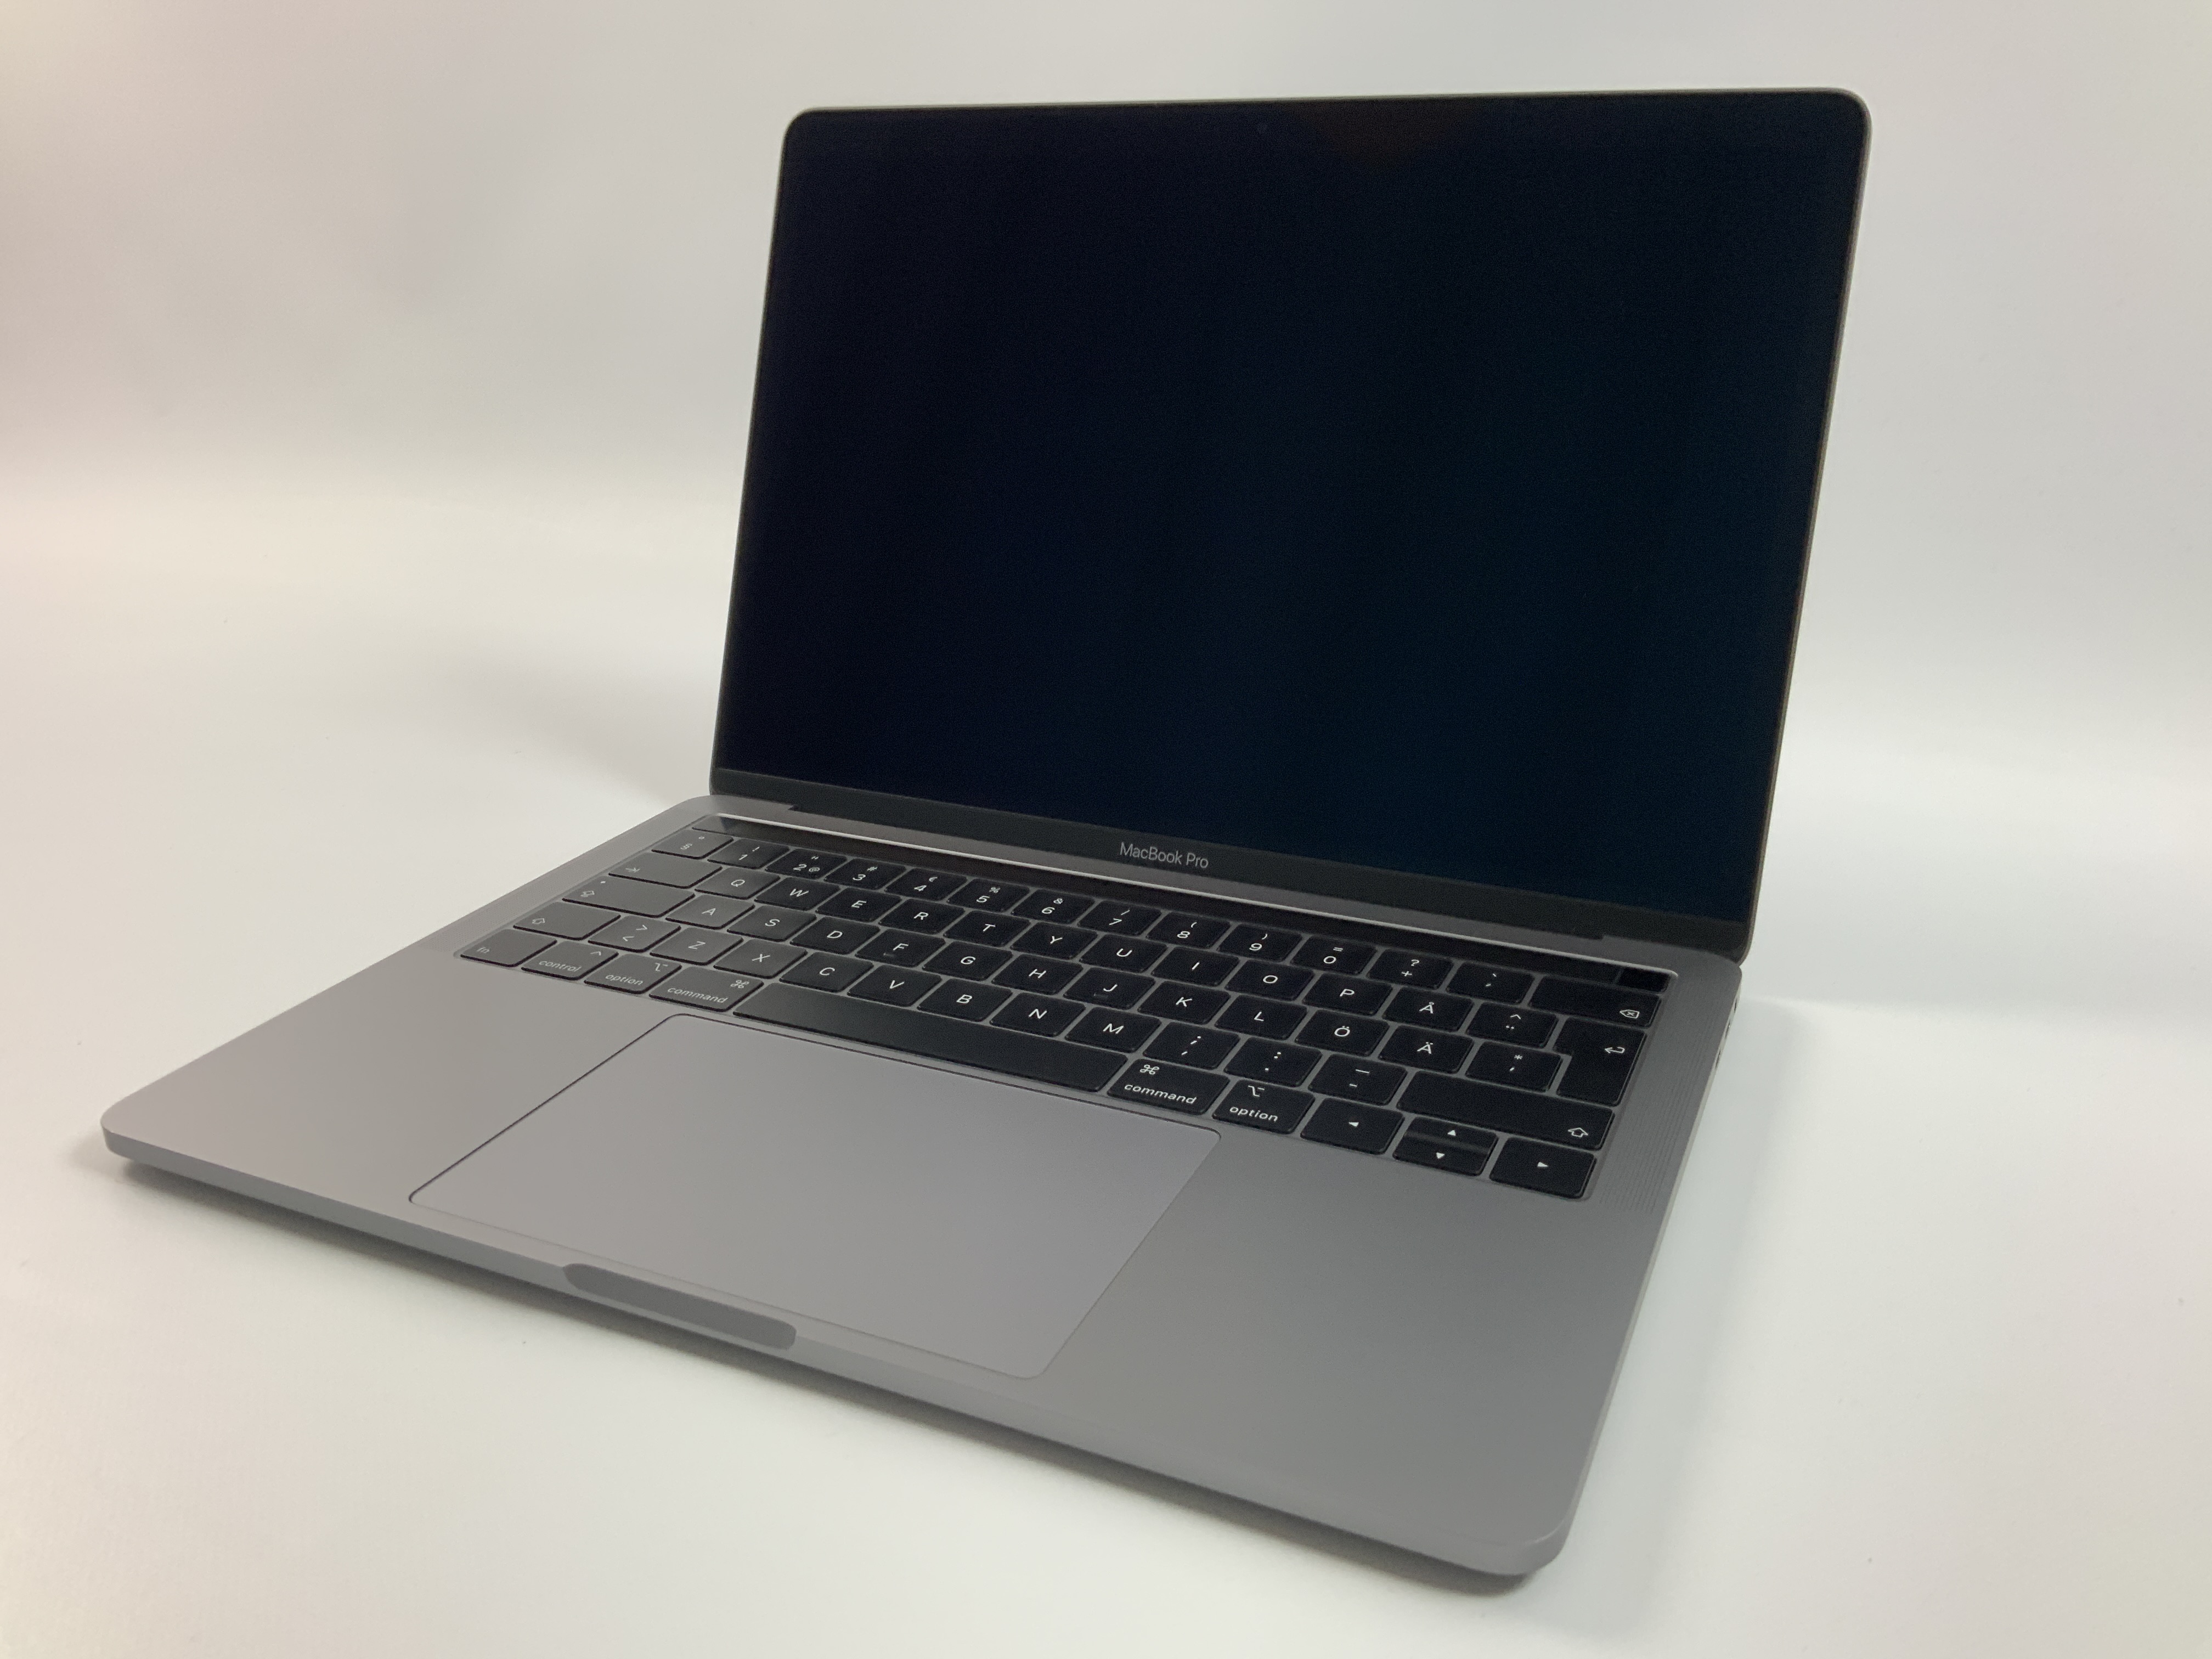 MacBook Pro 13" 4TBT Mid 2018 (Intel Quad-Core i5 2.3 GHz 8 GB RAM 512 GB SSD), Space Gray, Intel Quad-Core i5 2.3 GHz, 8 GB RAM, 512 GB SSD, bild 1